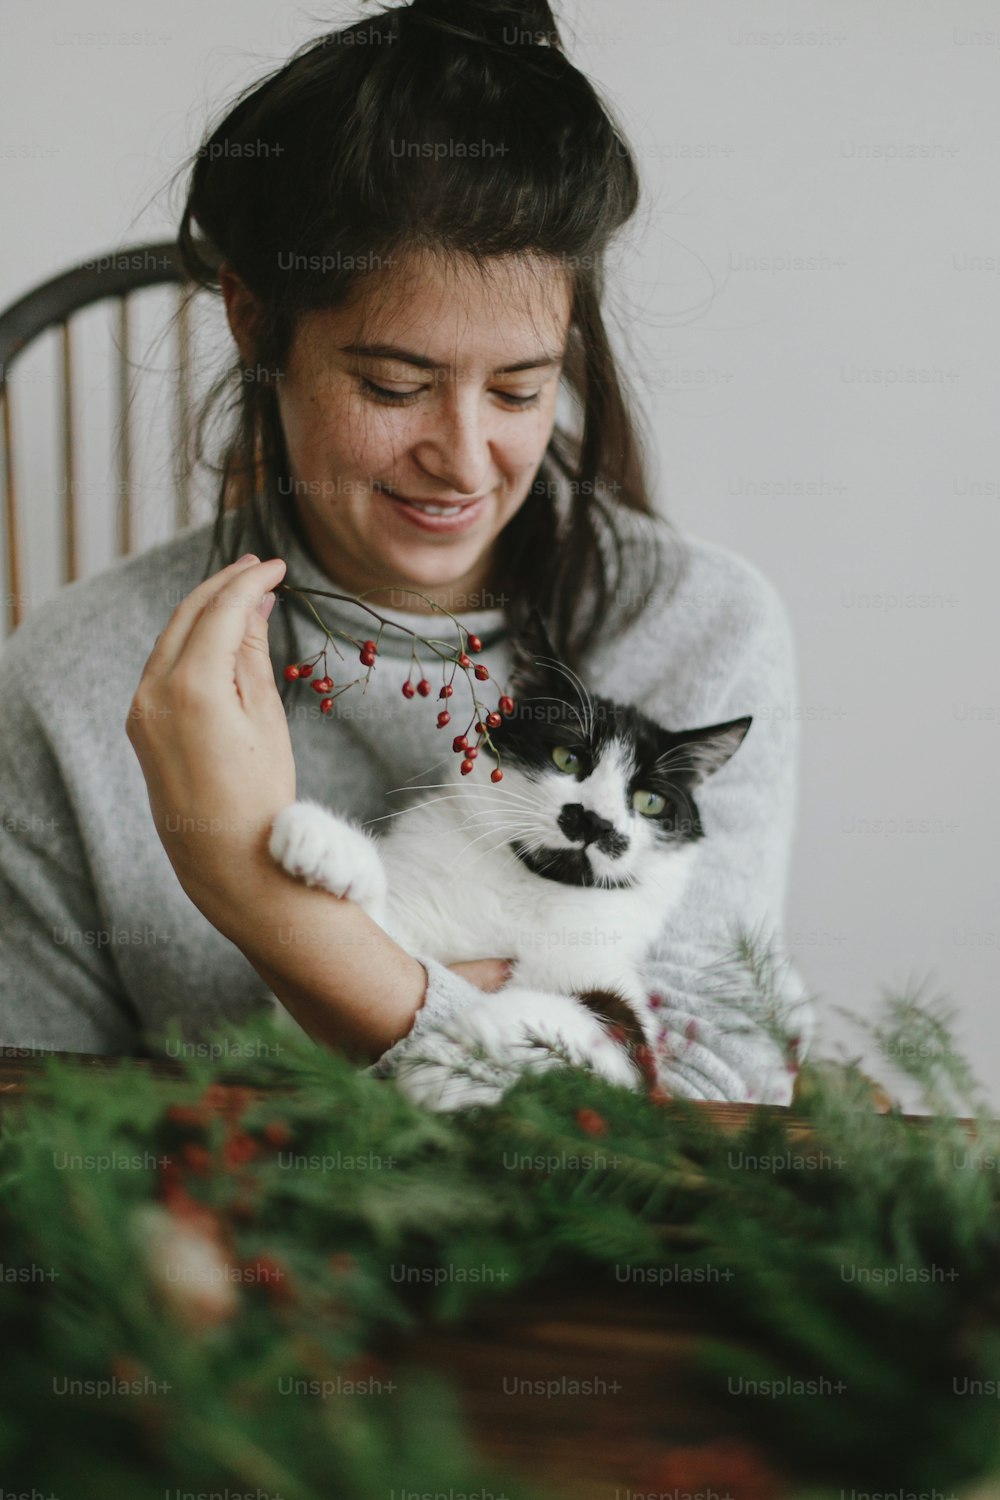 Faire une couronne de Noël avec un chat mignon à la maison, l’avent des vacances. Femme heureuse faisant une couronne de Noël avec une adorable aide féline, tenant des baies rouges et des branches vertes. Image authentique et élégante